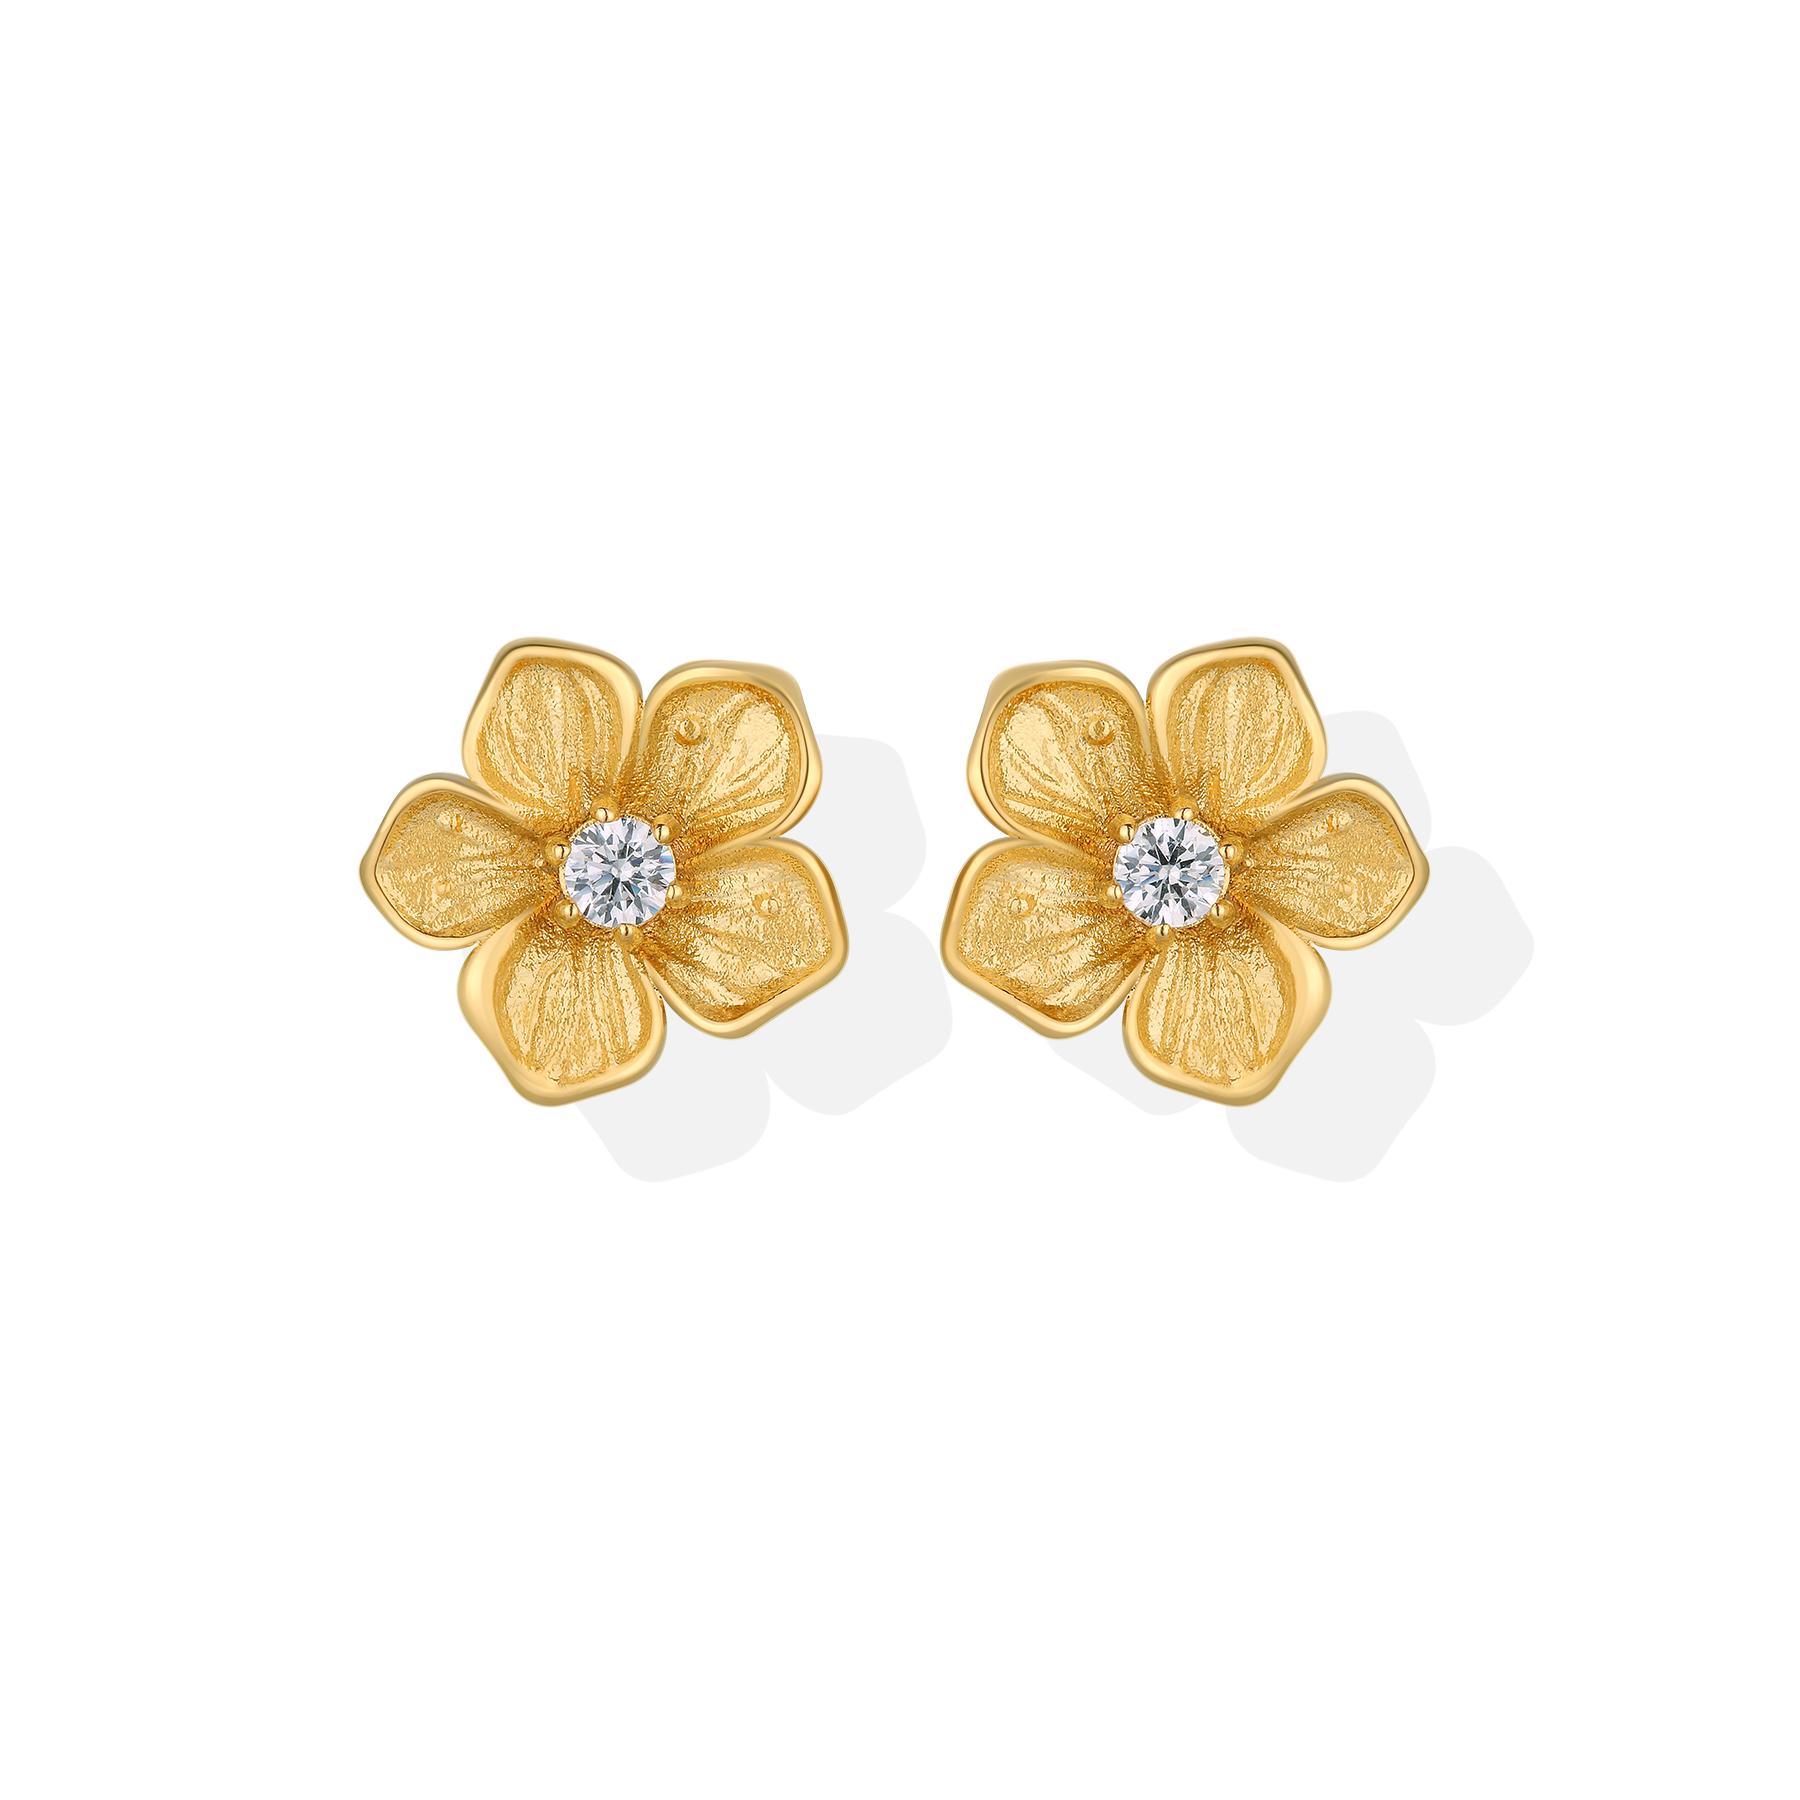 The Trendy Design Peach Blossom Gold Plating Flower Stud Earrings